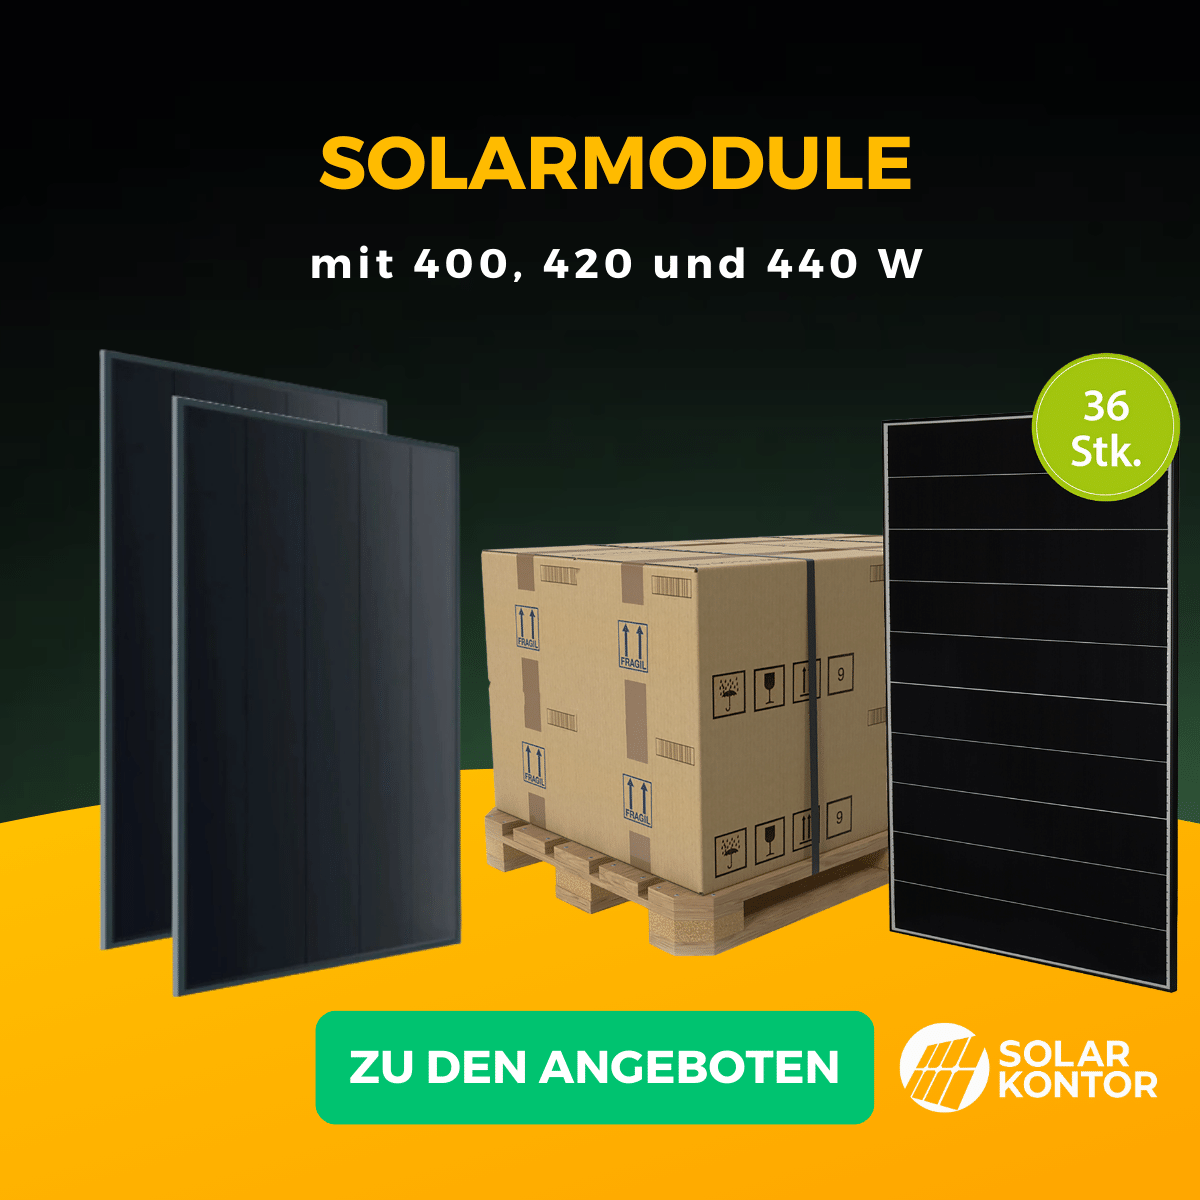 Aktuelle Angebote im Solarkontor